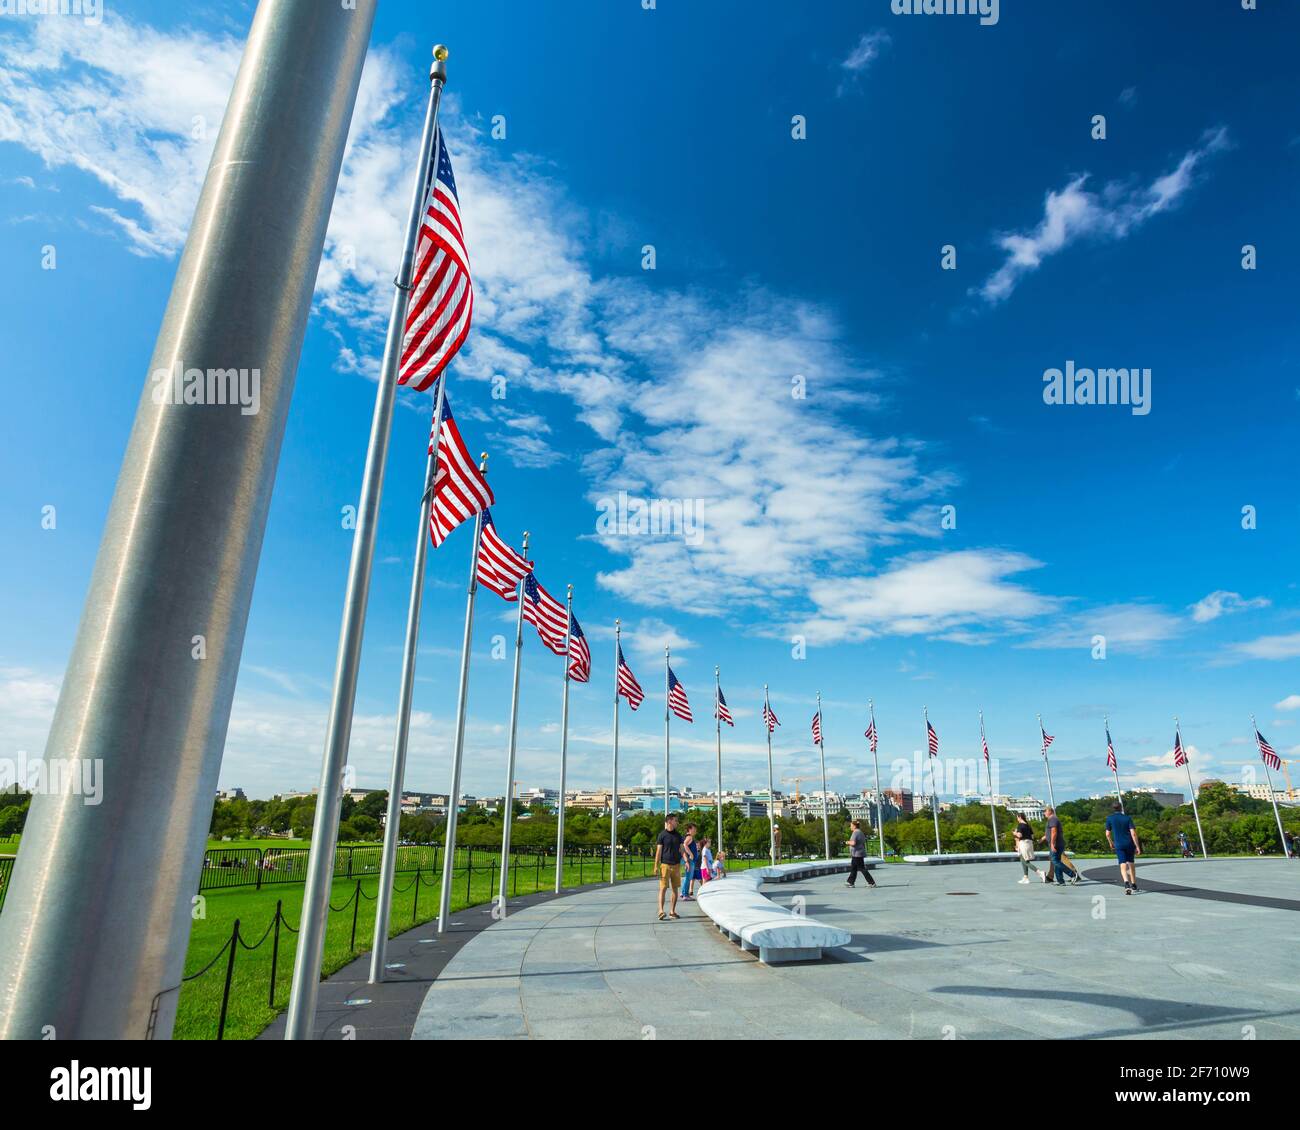 Une rangée de drapeaux américains sur les mâts de drapeaux soufflent dans le vent autour du Washington Monument à Washington, D.C., un jour ensoleillé Banque D'Images